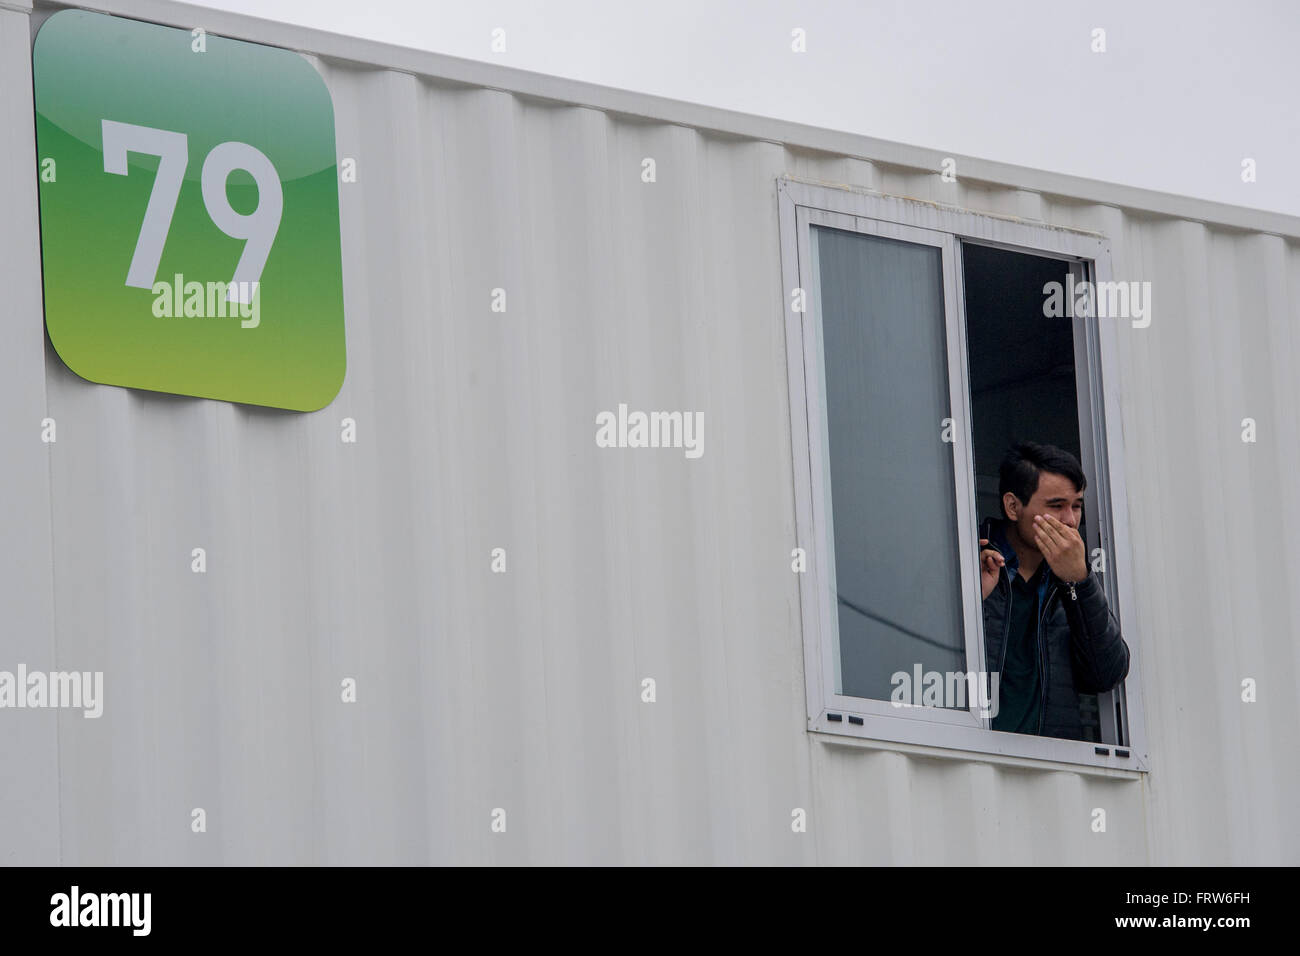 Natacha Bouchart, der Bürgermeister von Calais bei einem Besuch in der Container-Abschnitt des Flüchtlingslagers Dschungel von Calais in Nordfrankreich. Bouchard hielt eine Pressekonferenz zur Förderung der Nutzung der umstrittenen "Container" in einem umzäunten Bereich neben der wichtigsten cam Stockfoto